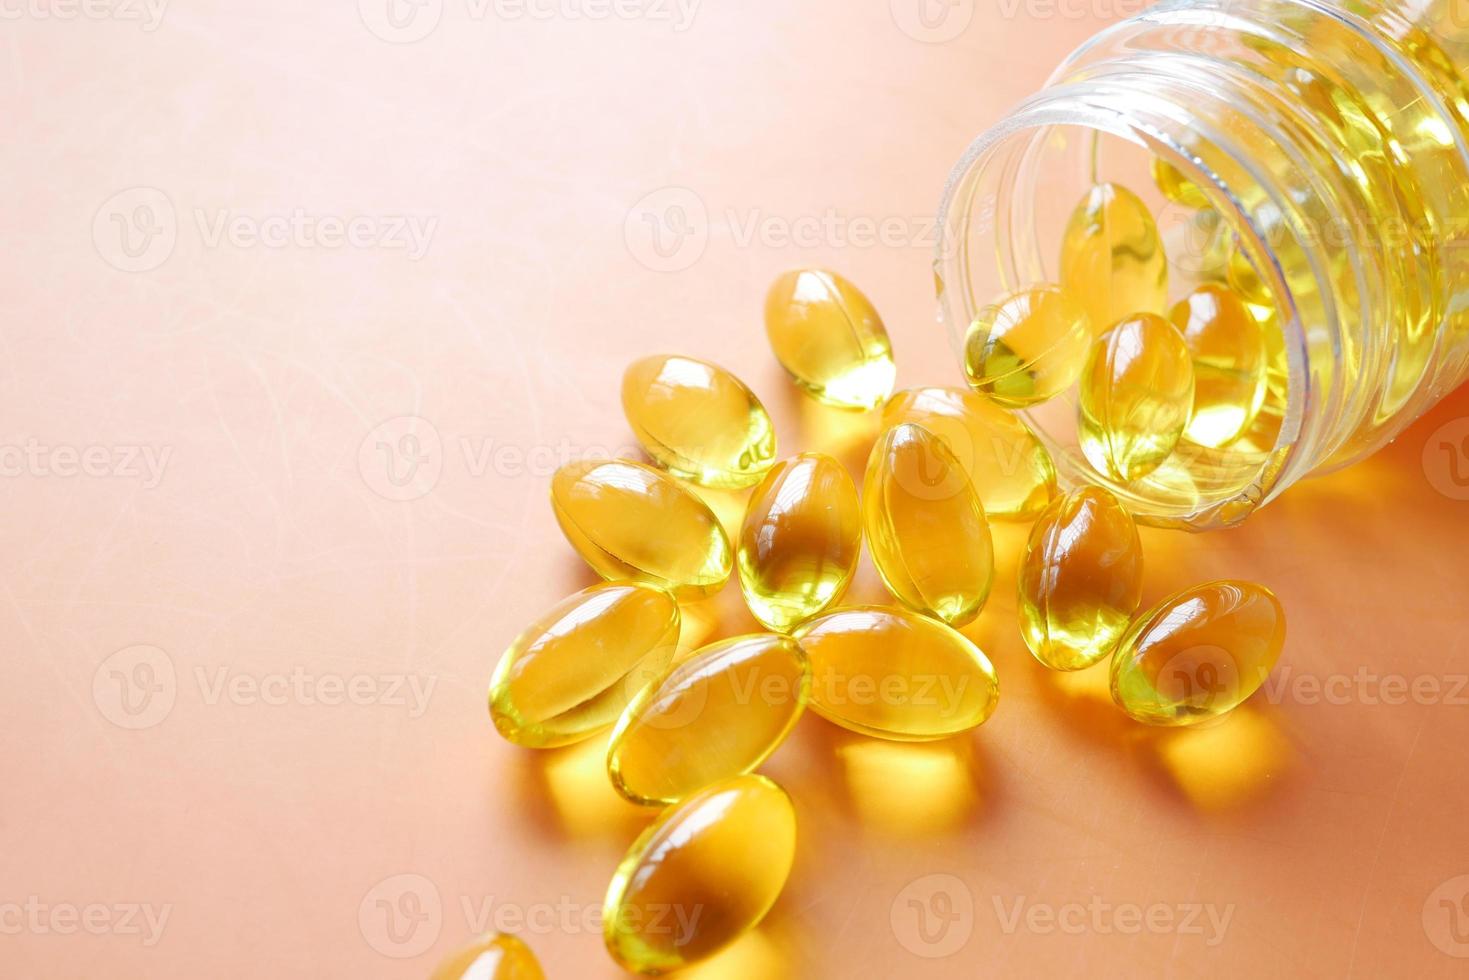 Close up of many vitamin capsule on orange background photo